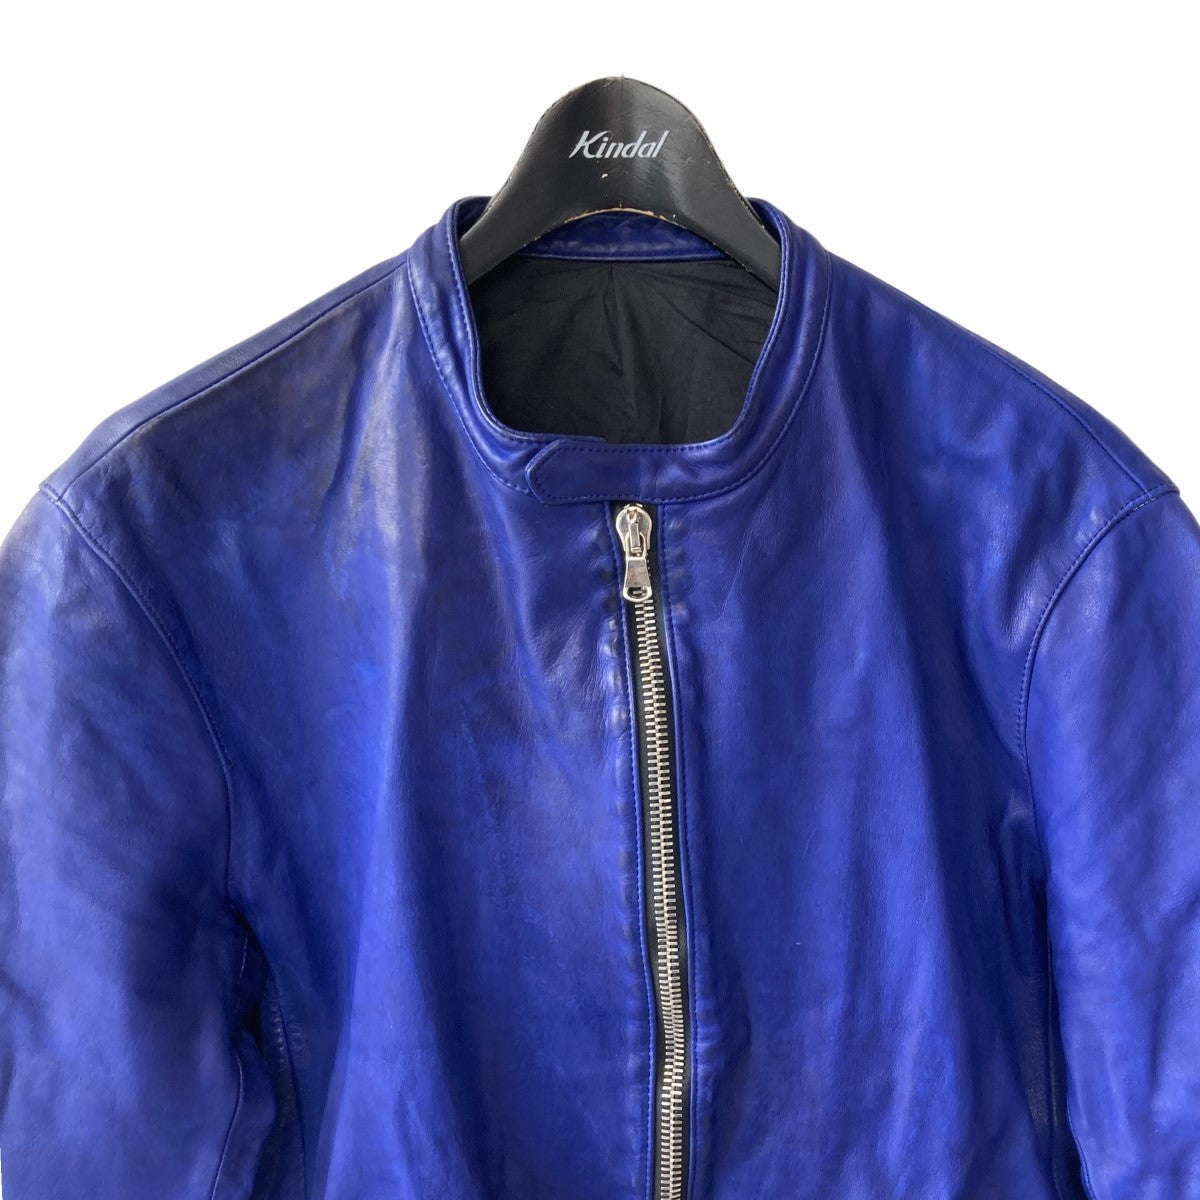 STRUM(ストラム) レザージャケット STL027-02 ブルー サイズ 16 